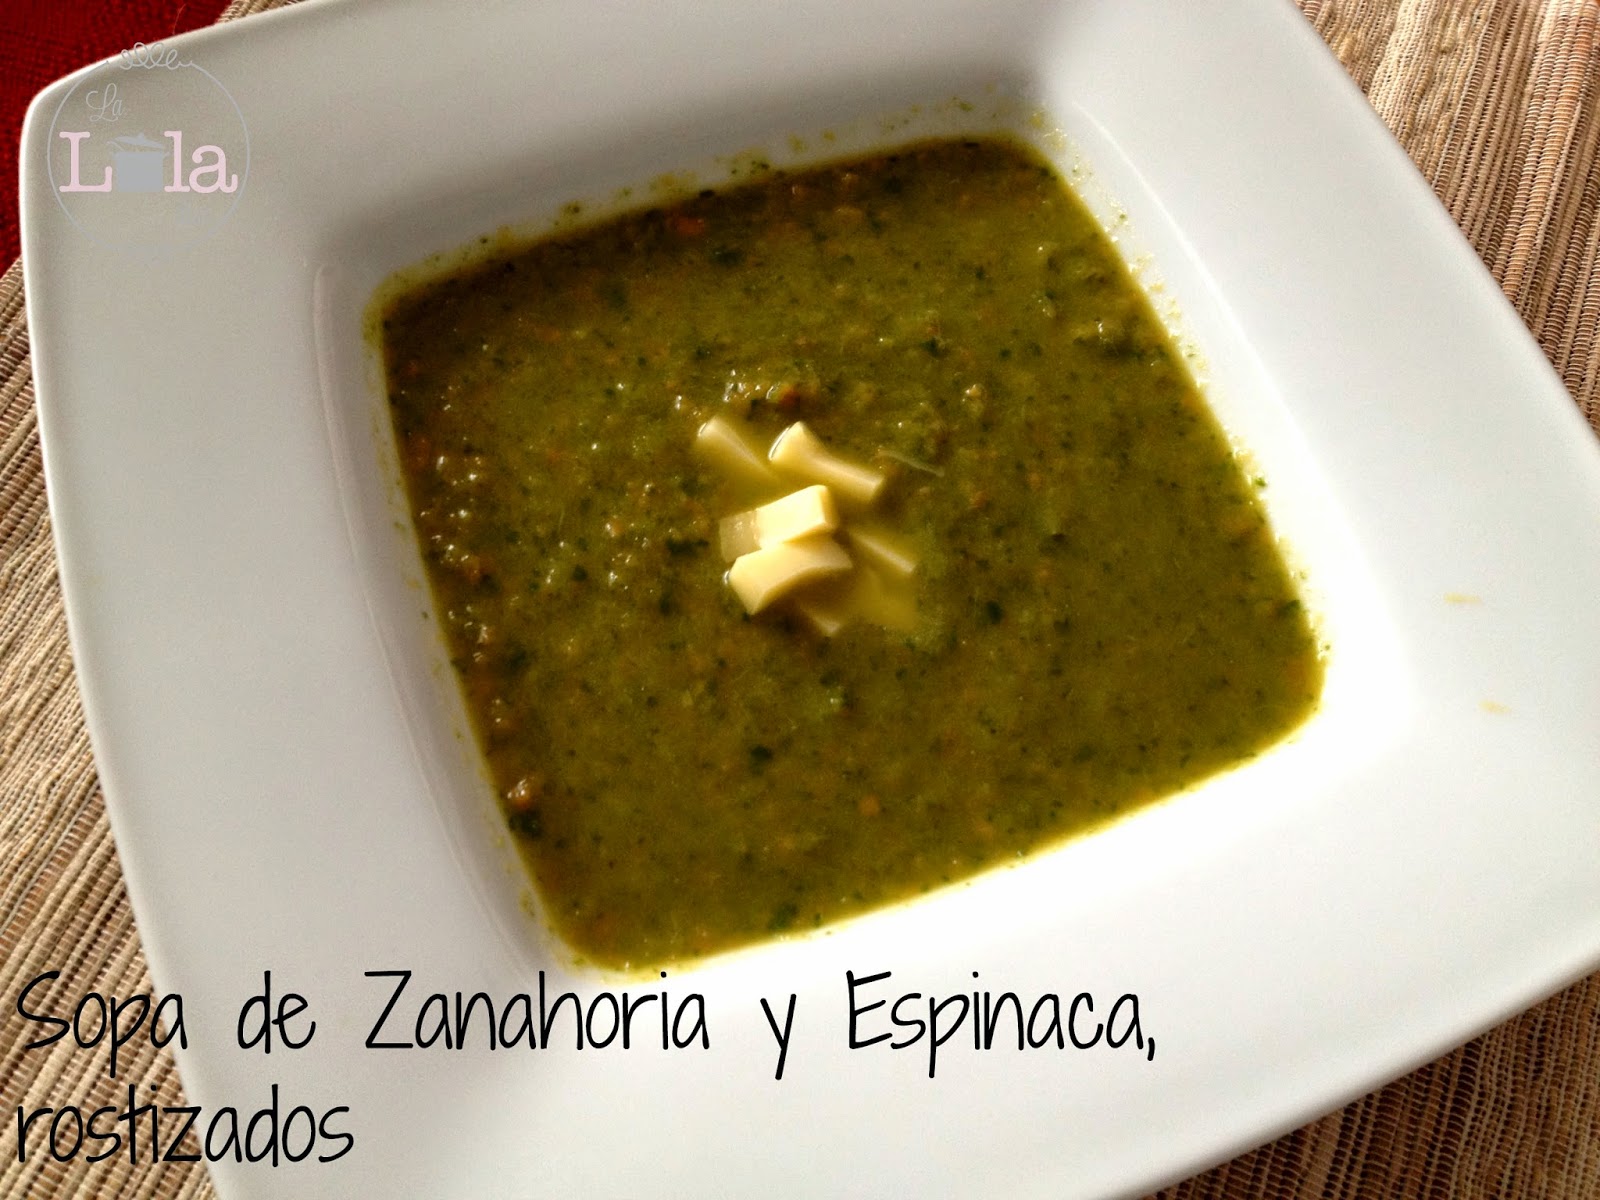 Sopa De Zanahoria Y Espinaca, Rostizados
